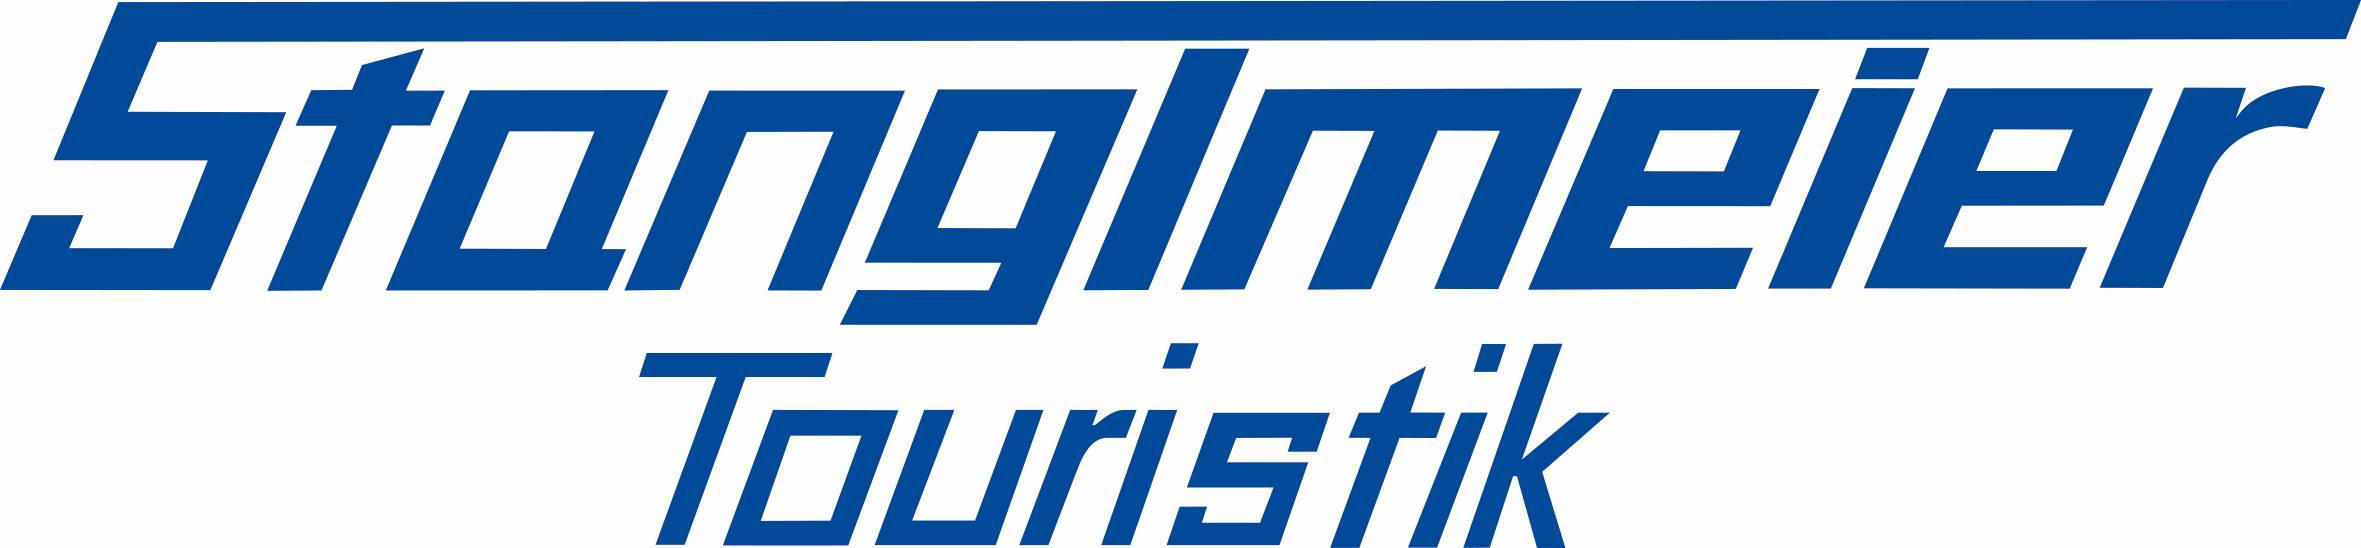 Busreiseveranstalter Stanglmeier Touristik GmbH & Co. KG